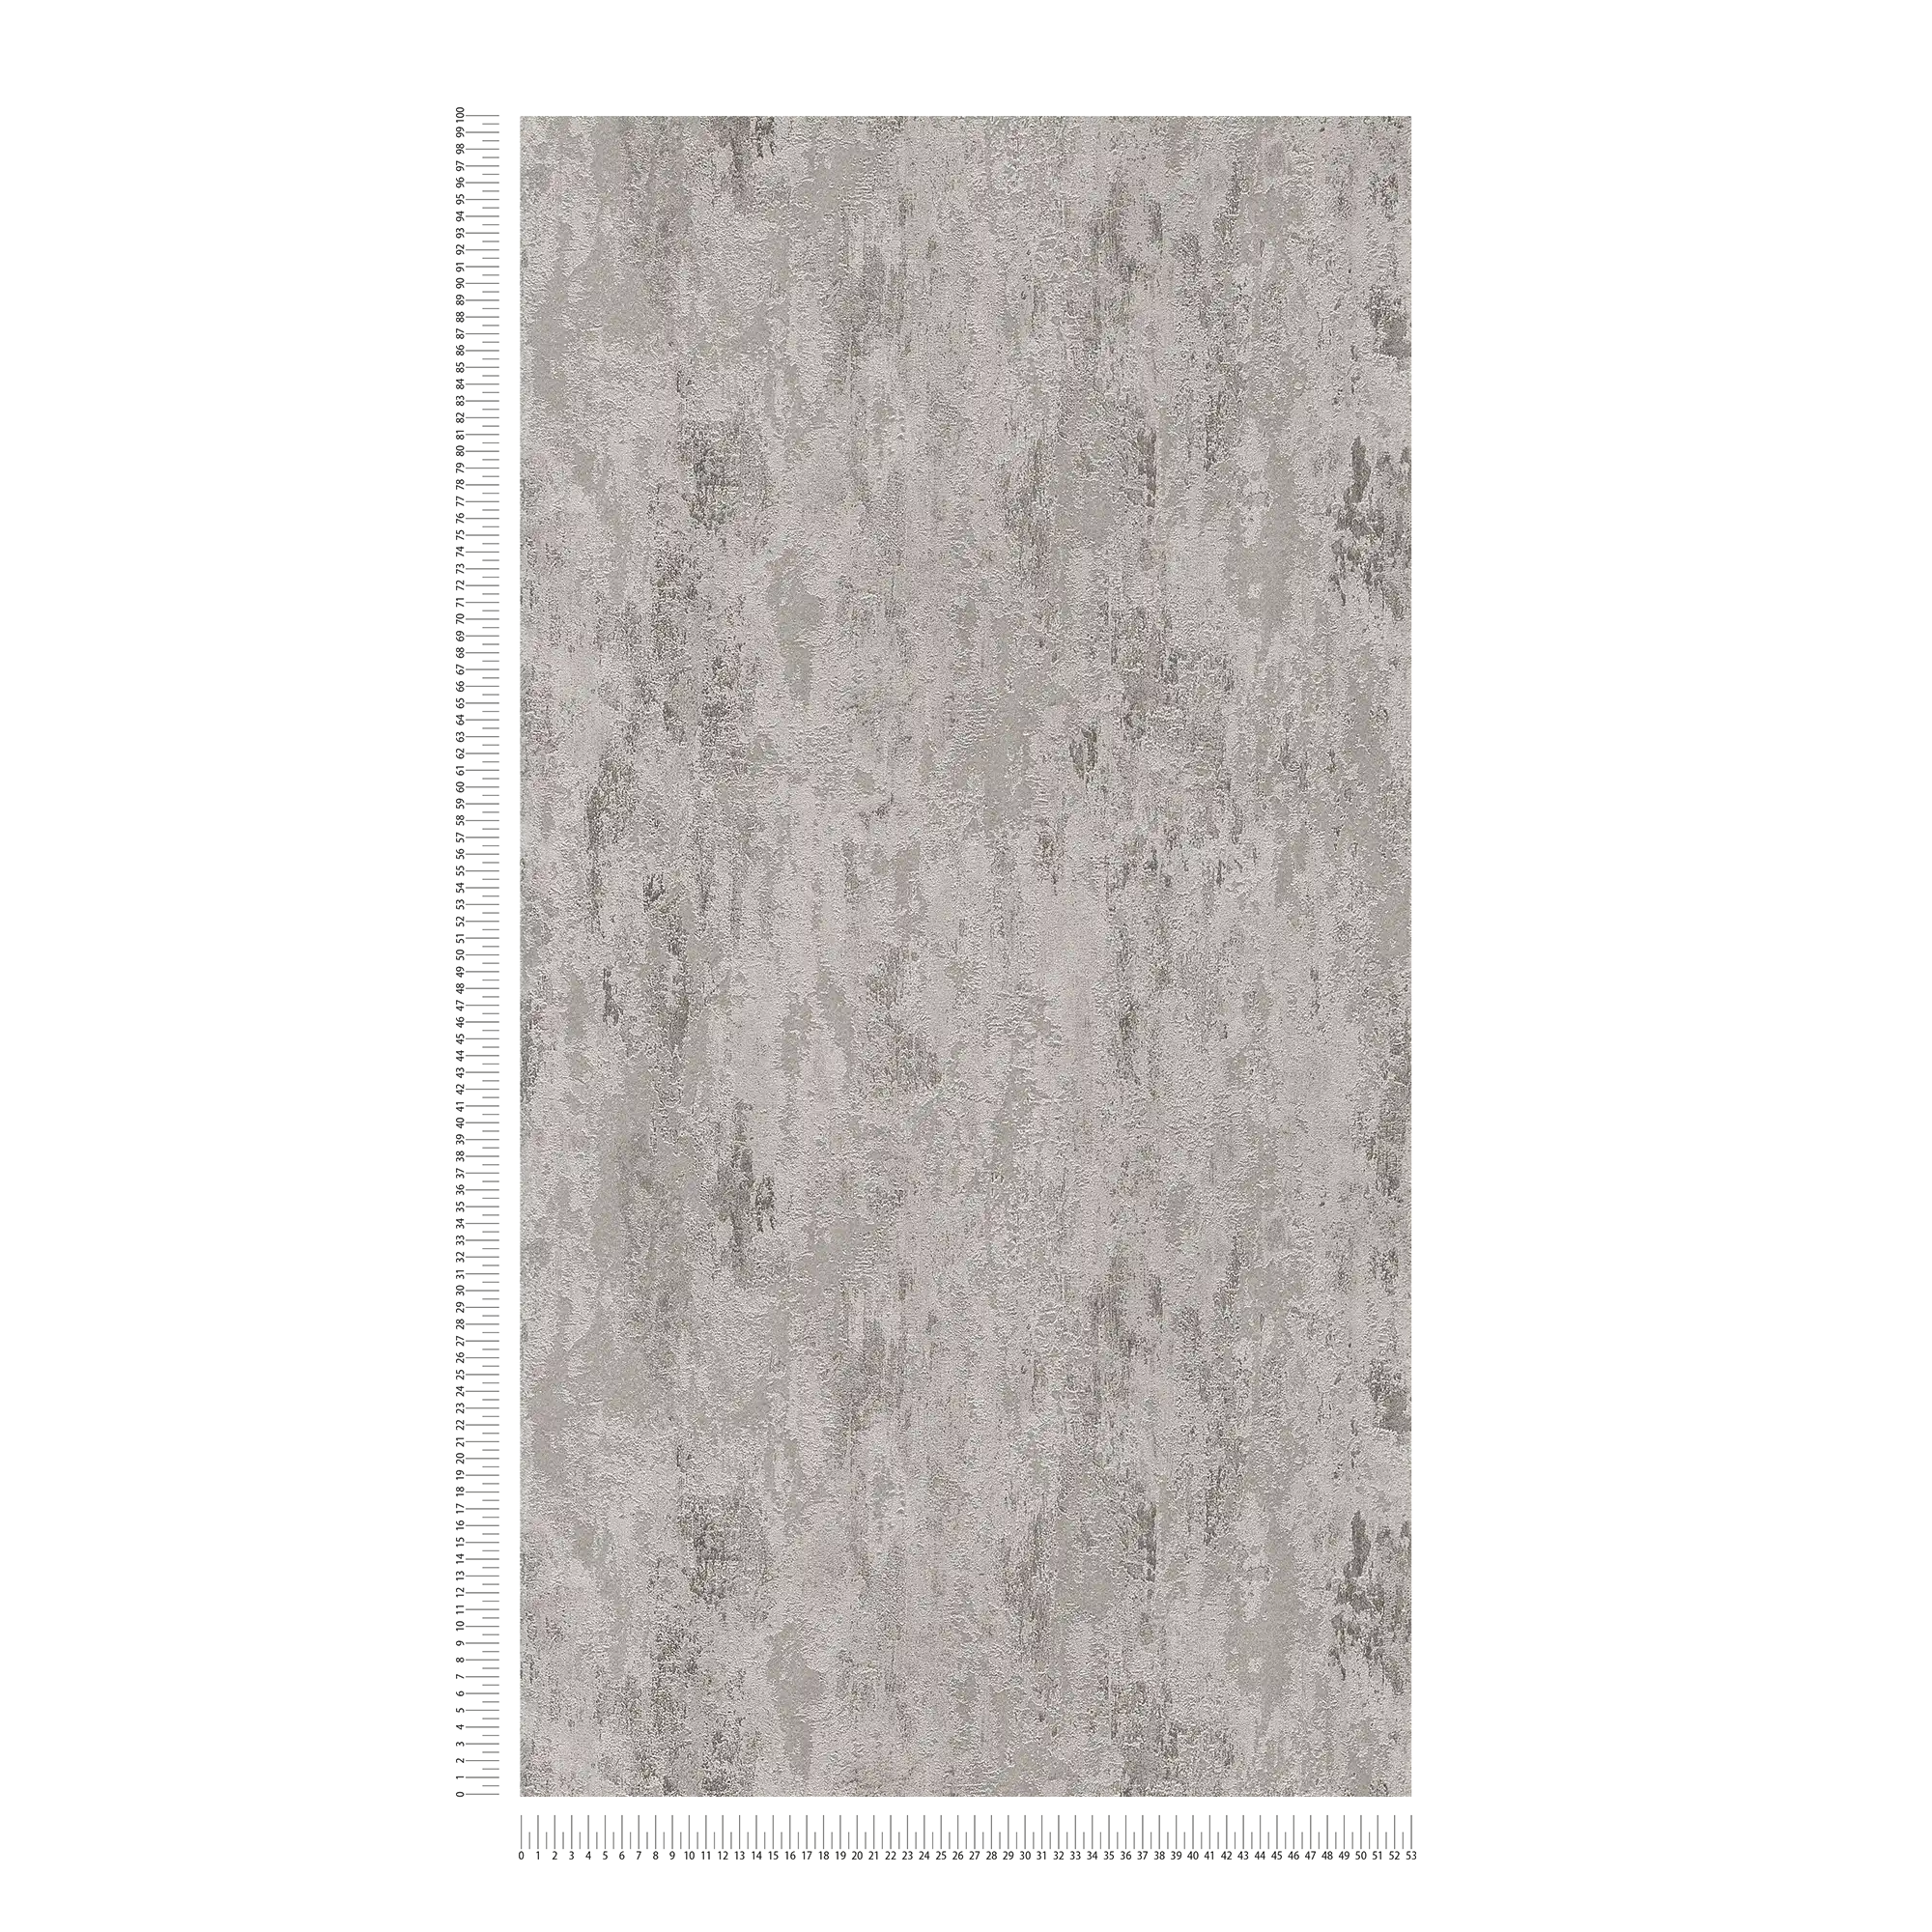             Carta da parati in tessuto non tessuto ruggine con motivo strutturato - grigio, argento
        